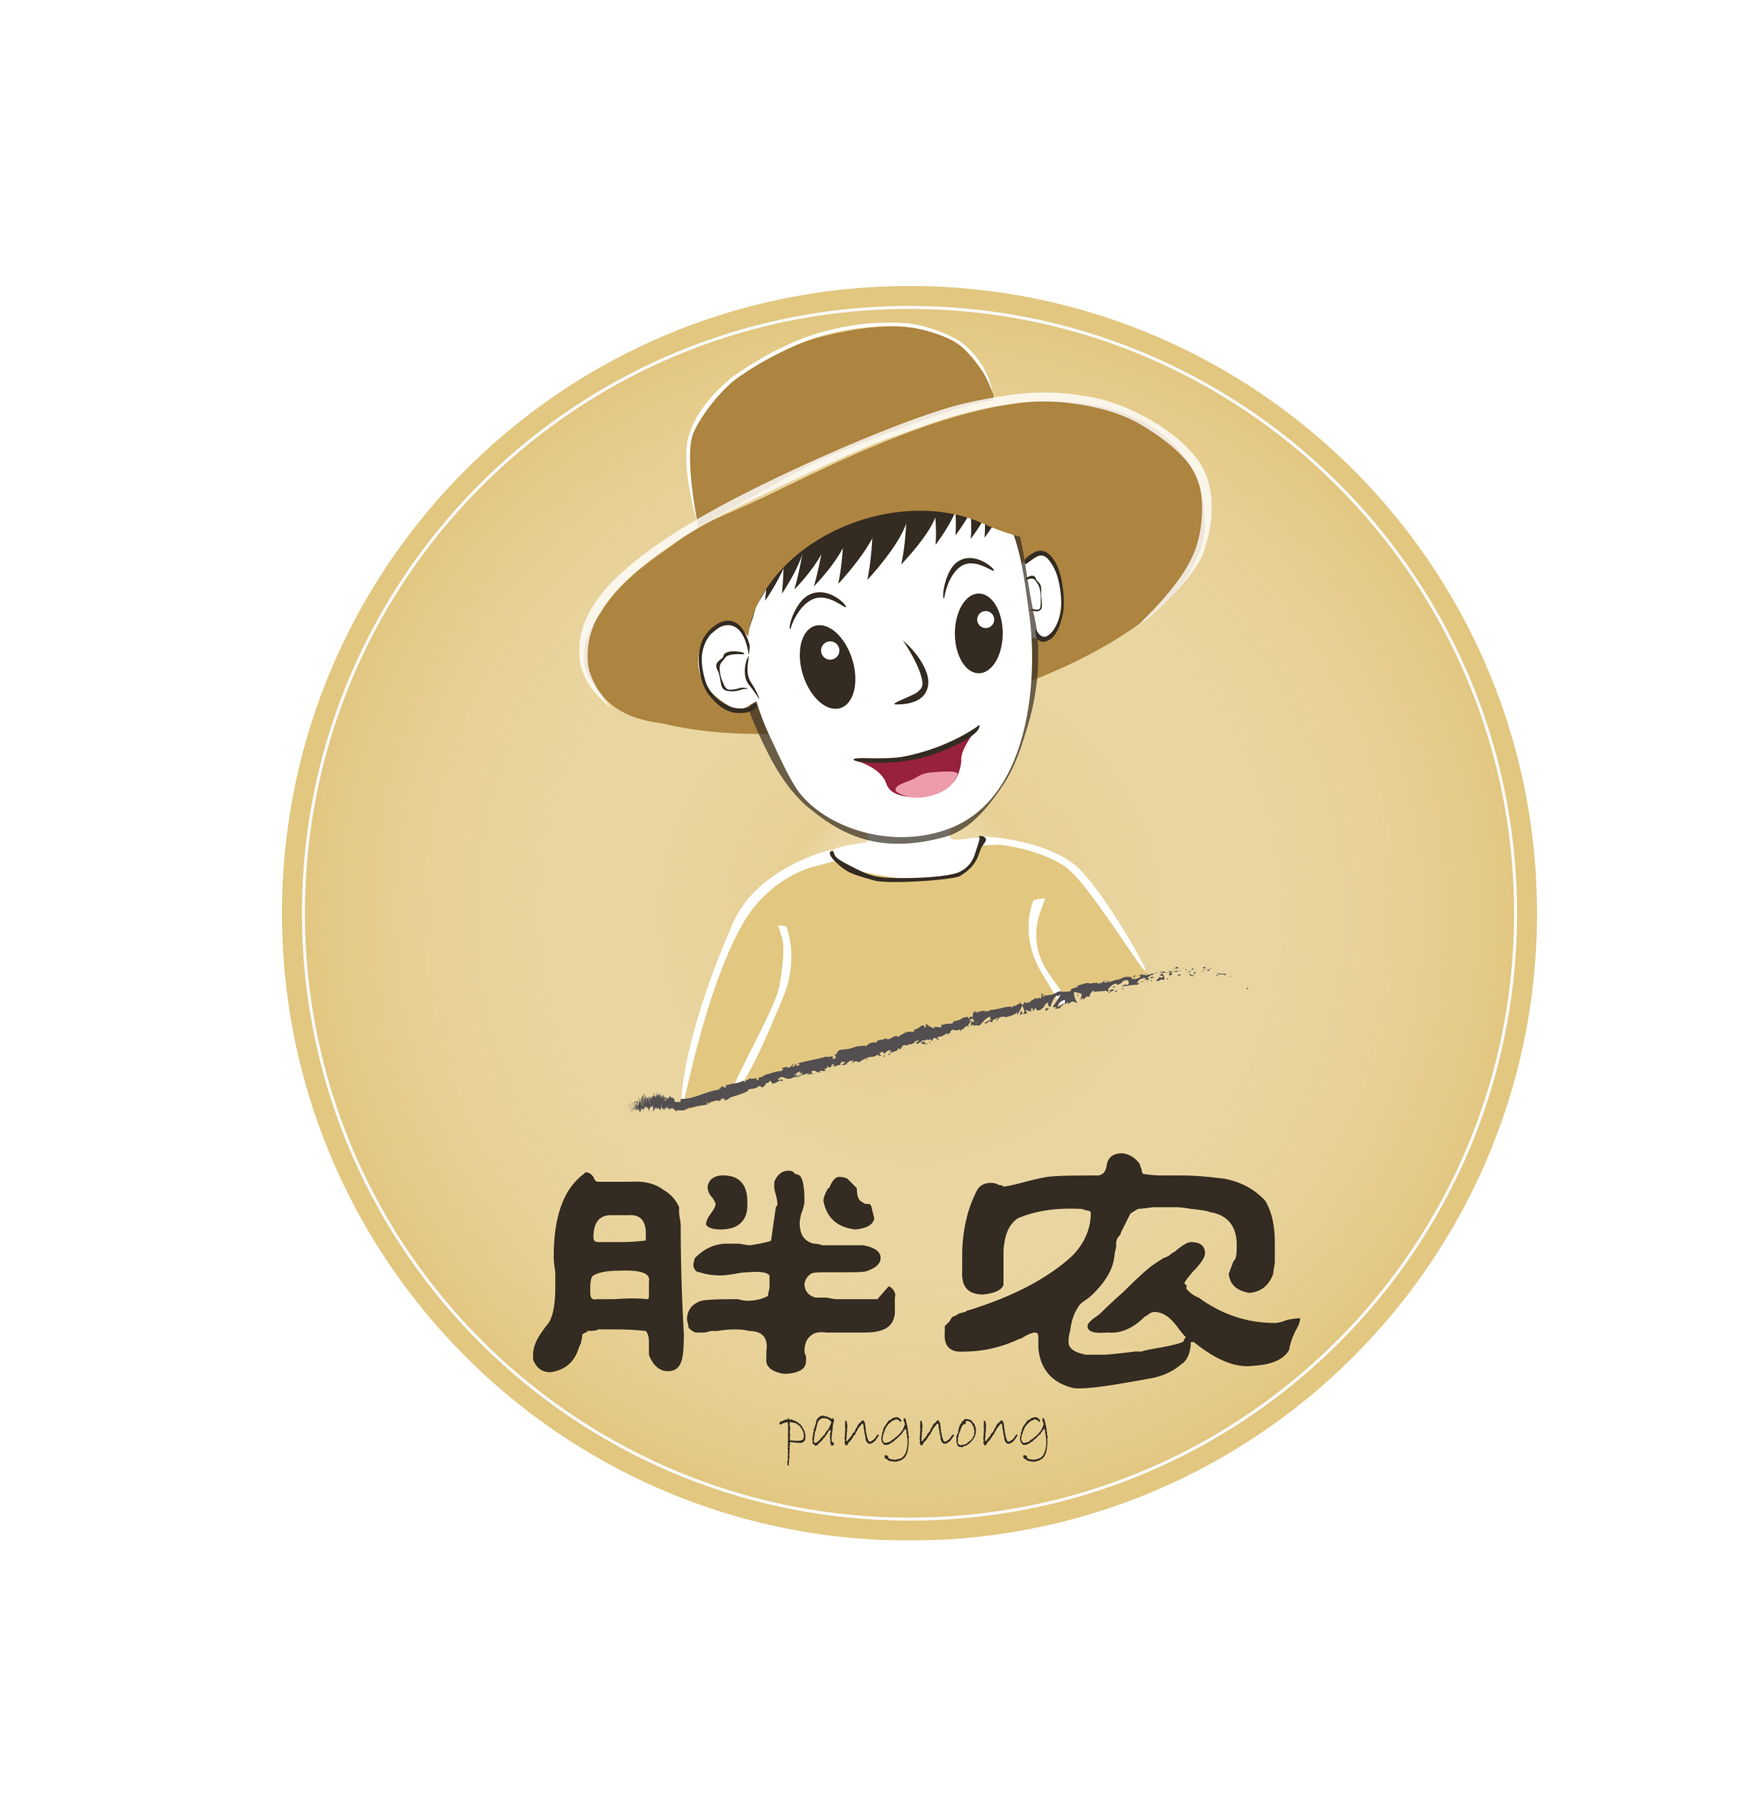 胖农 logo